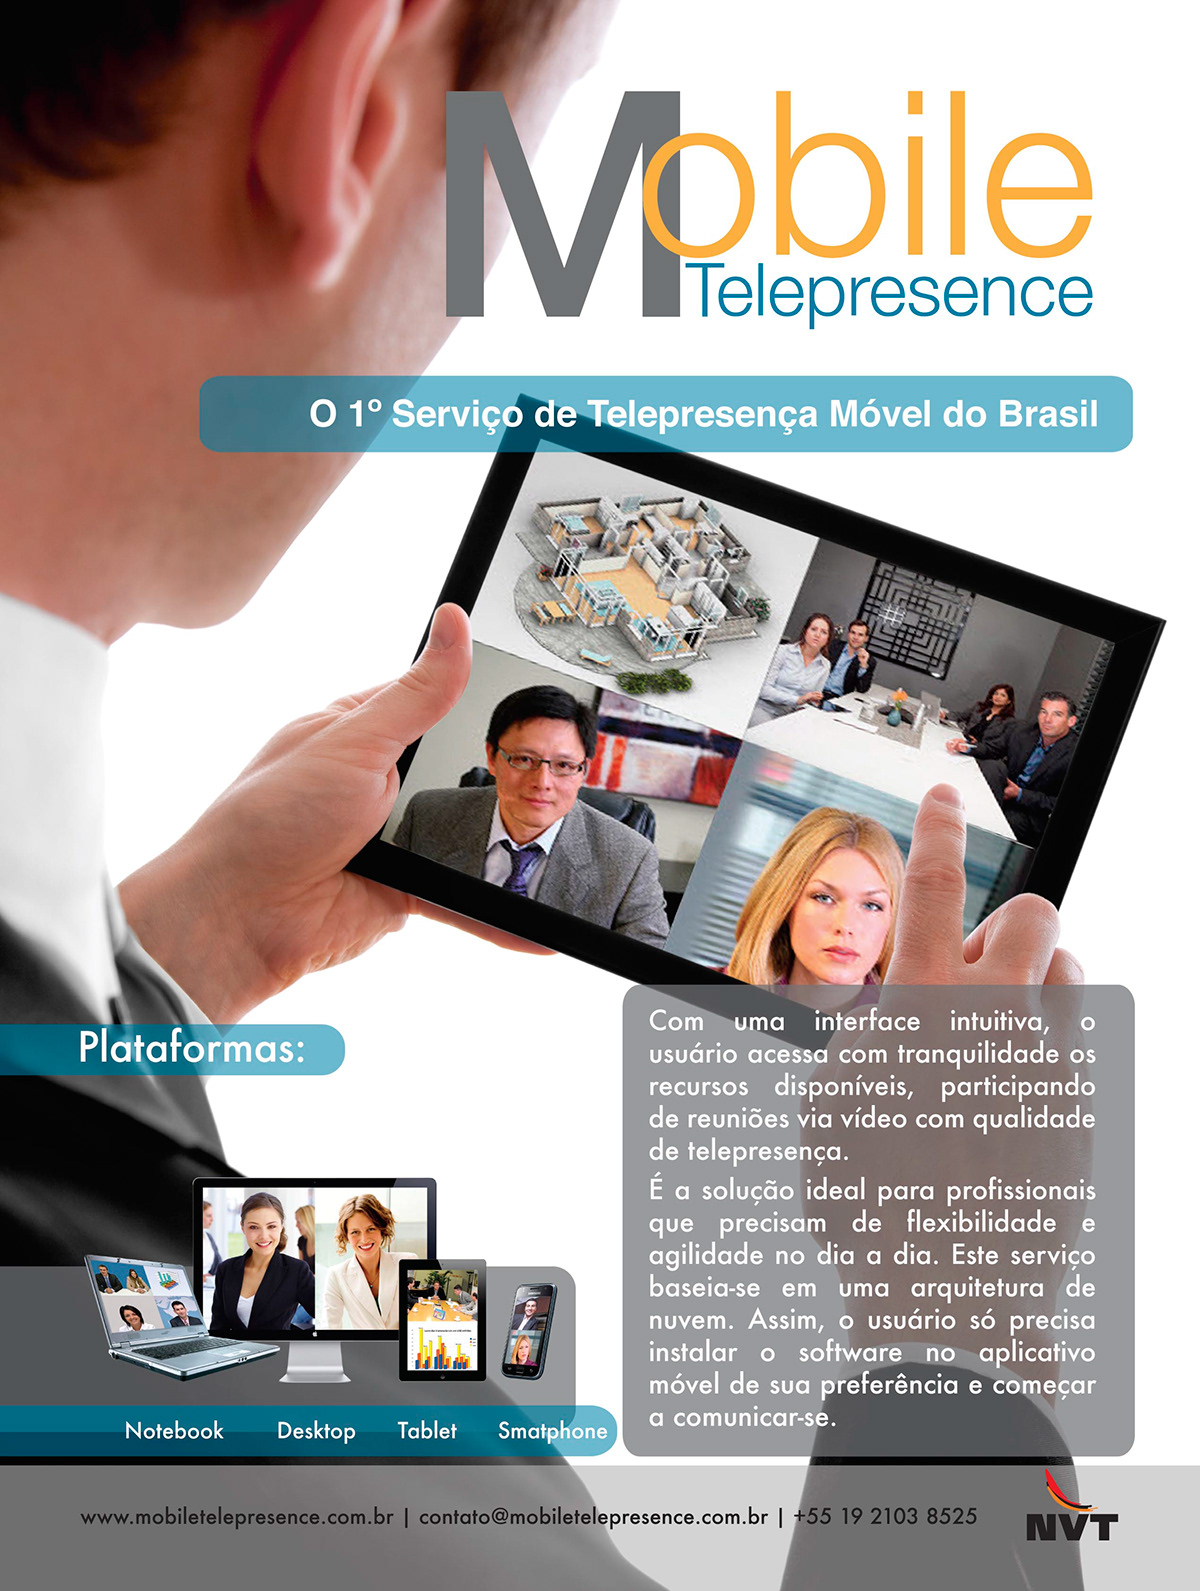 celoribeiro Marcelo Ribeiro design publicidade Propaganda arte art mobile telepresence phone Celular iPad desktop publish emkt